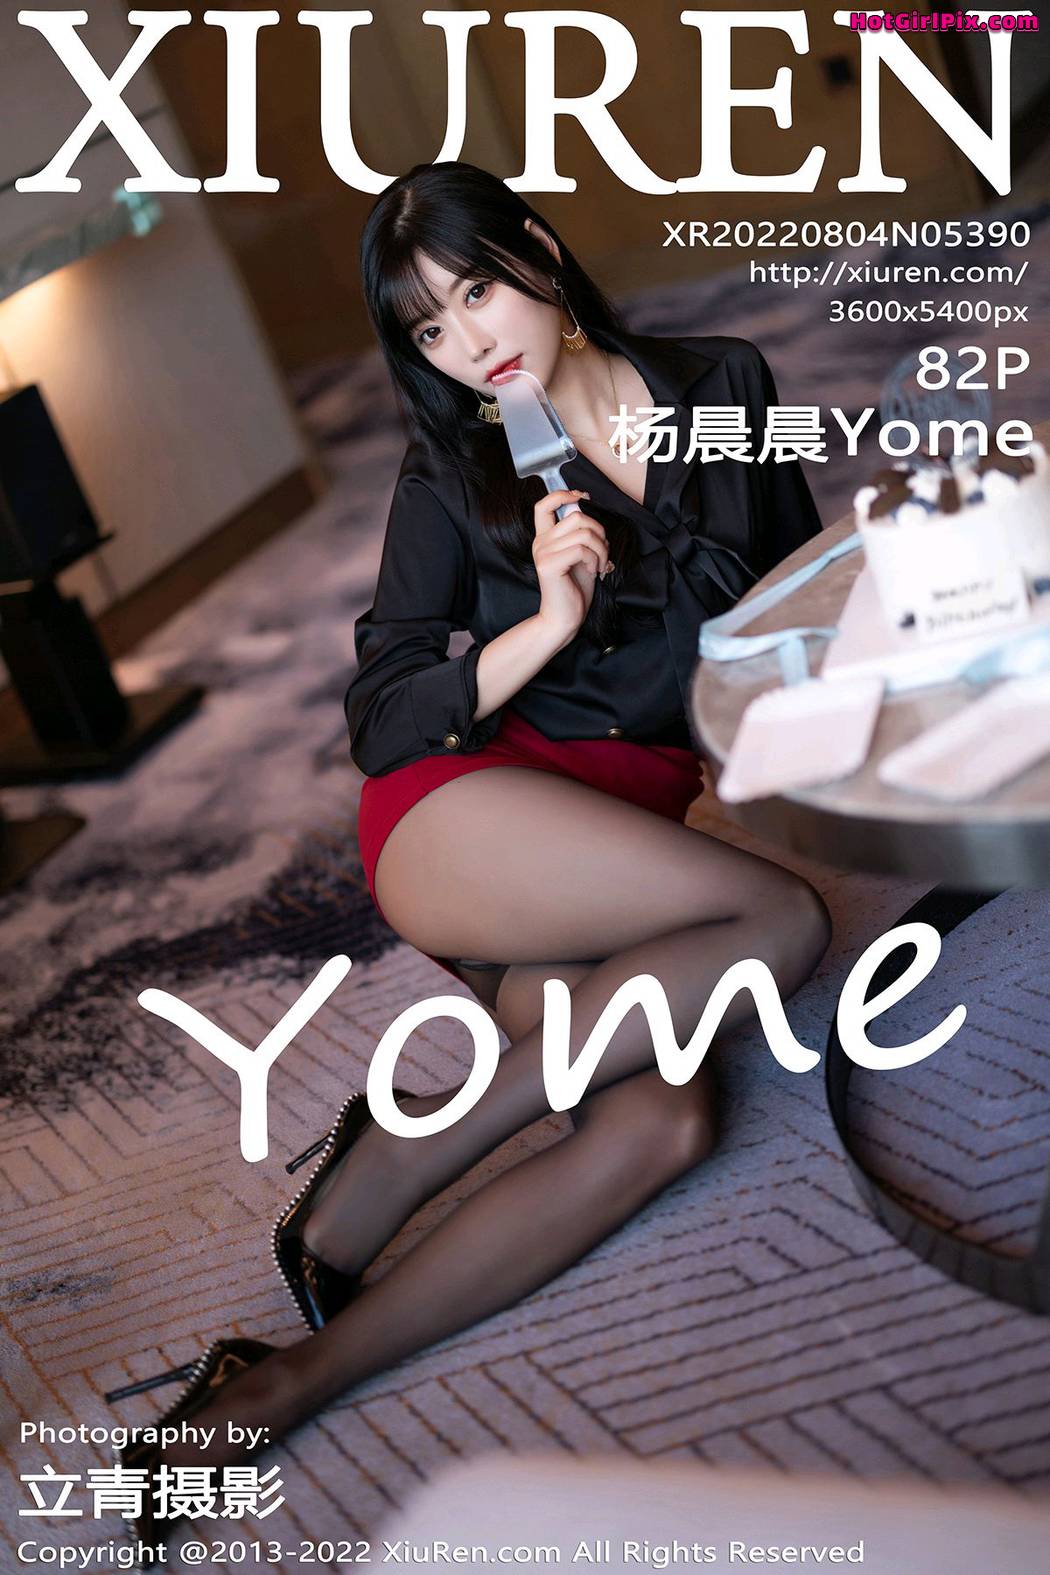 [XIUREN] No.5390 Yang Chen Chen 杨晨晨Yome (Yang Chen Chen 杨晨晨sugar) Cover Photo